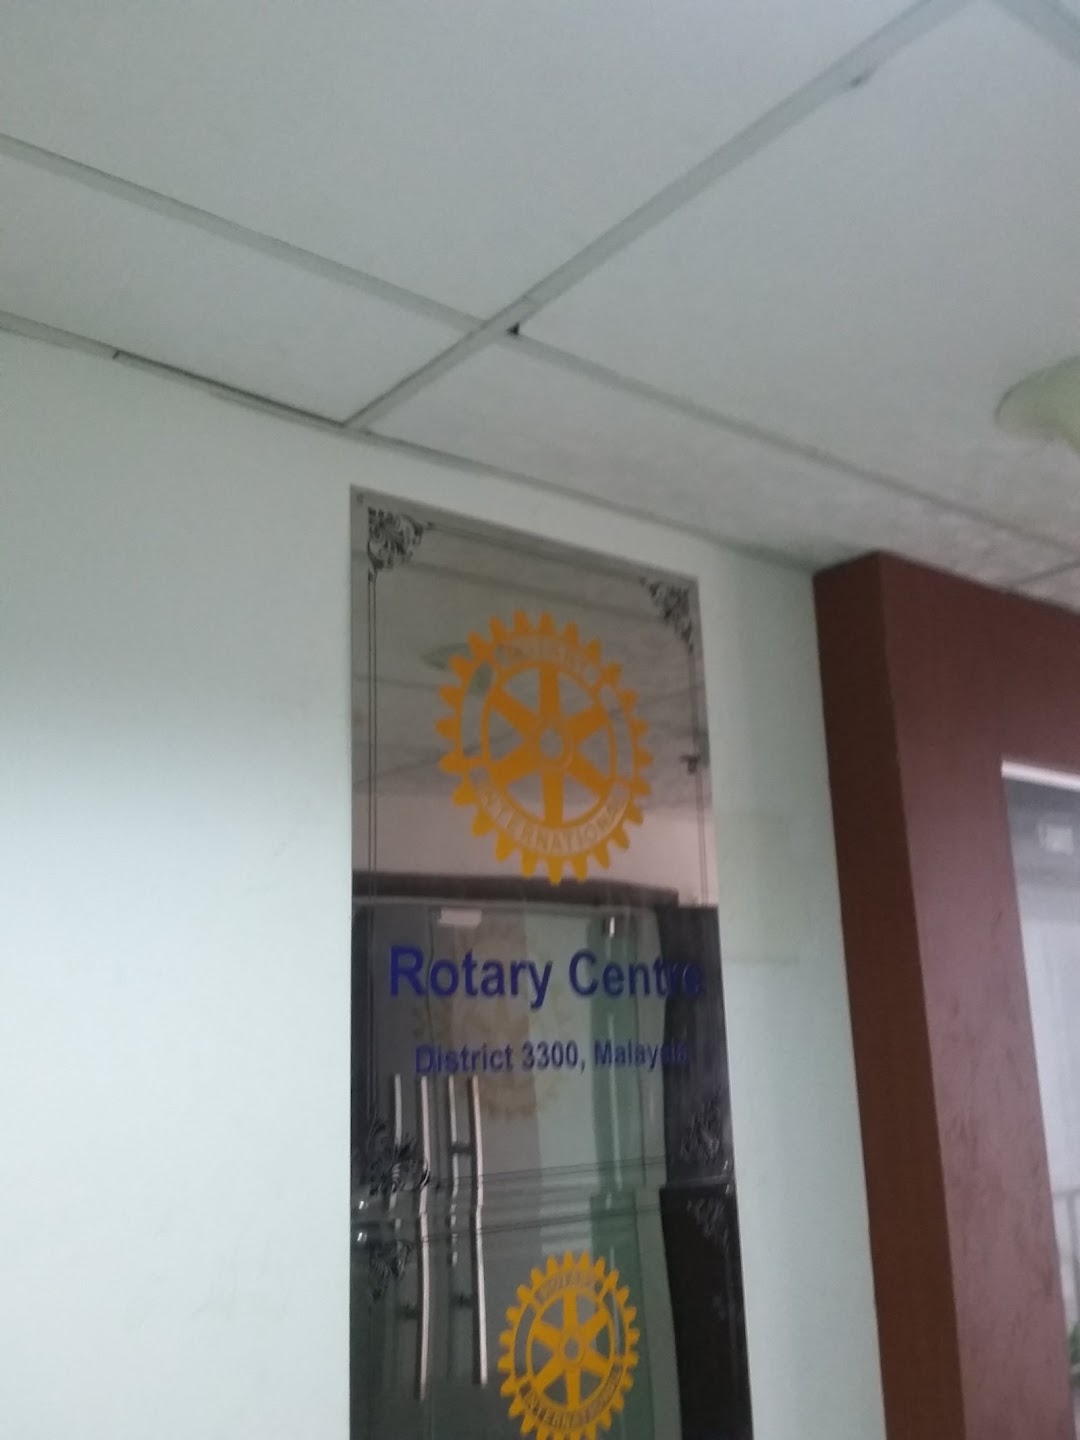 Rotary Centre